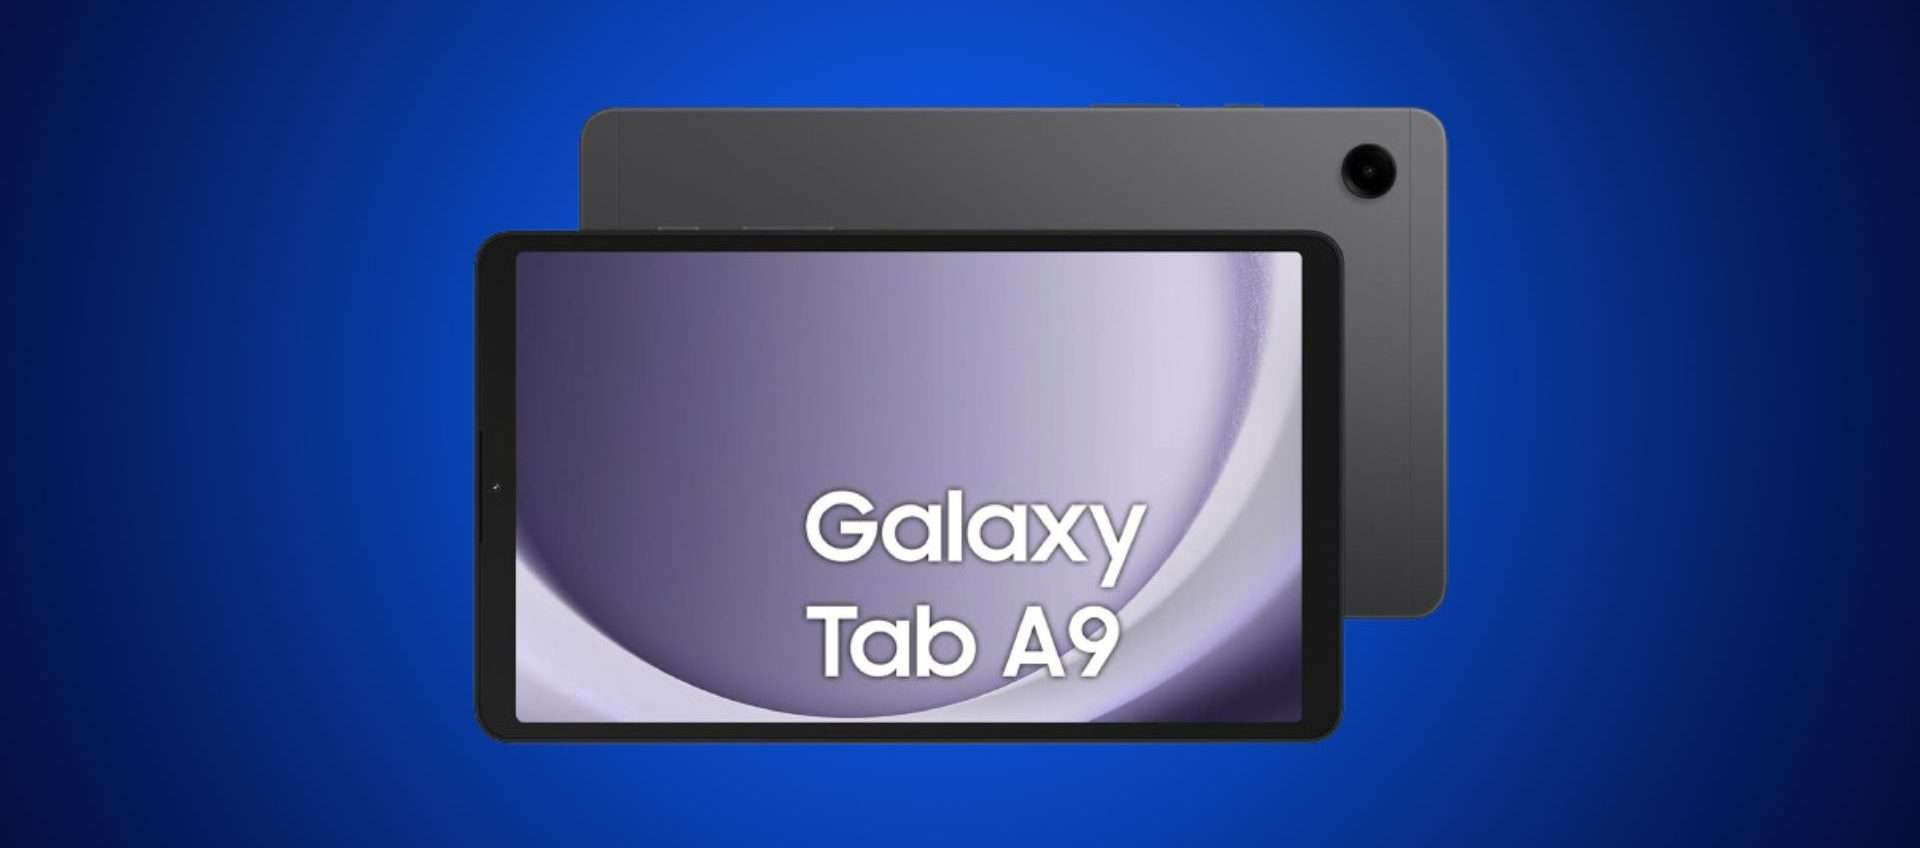 Samsung Galaxy Tab A9, che prezzo! Su Amazon è tuo a 129,40€